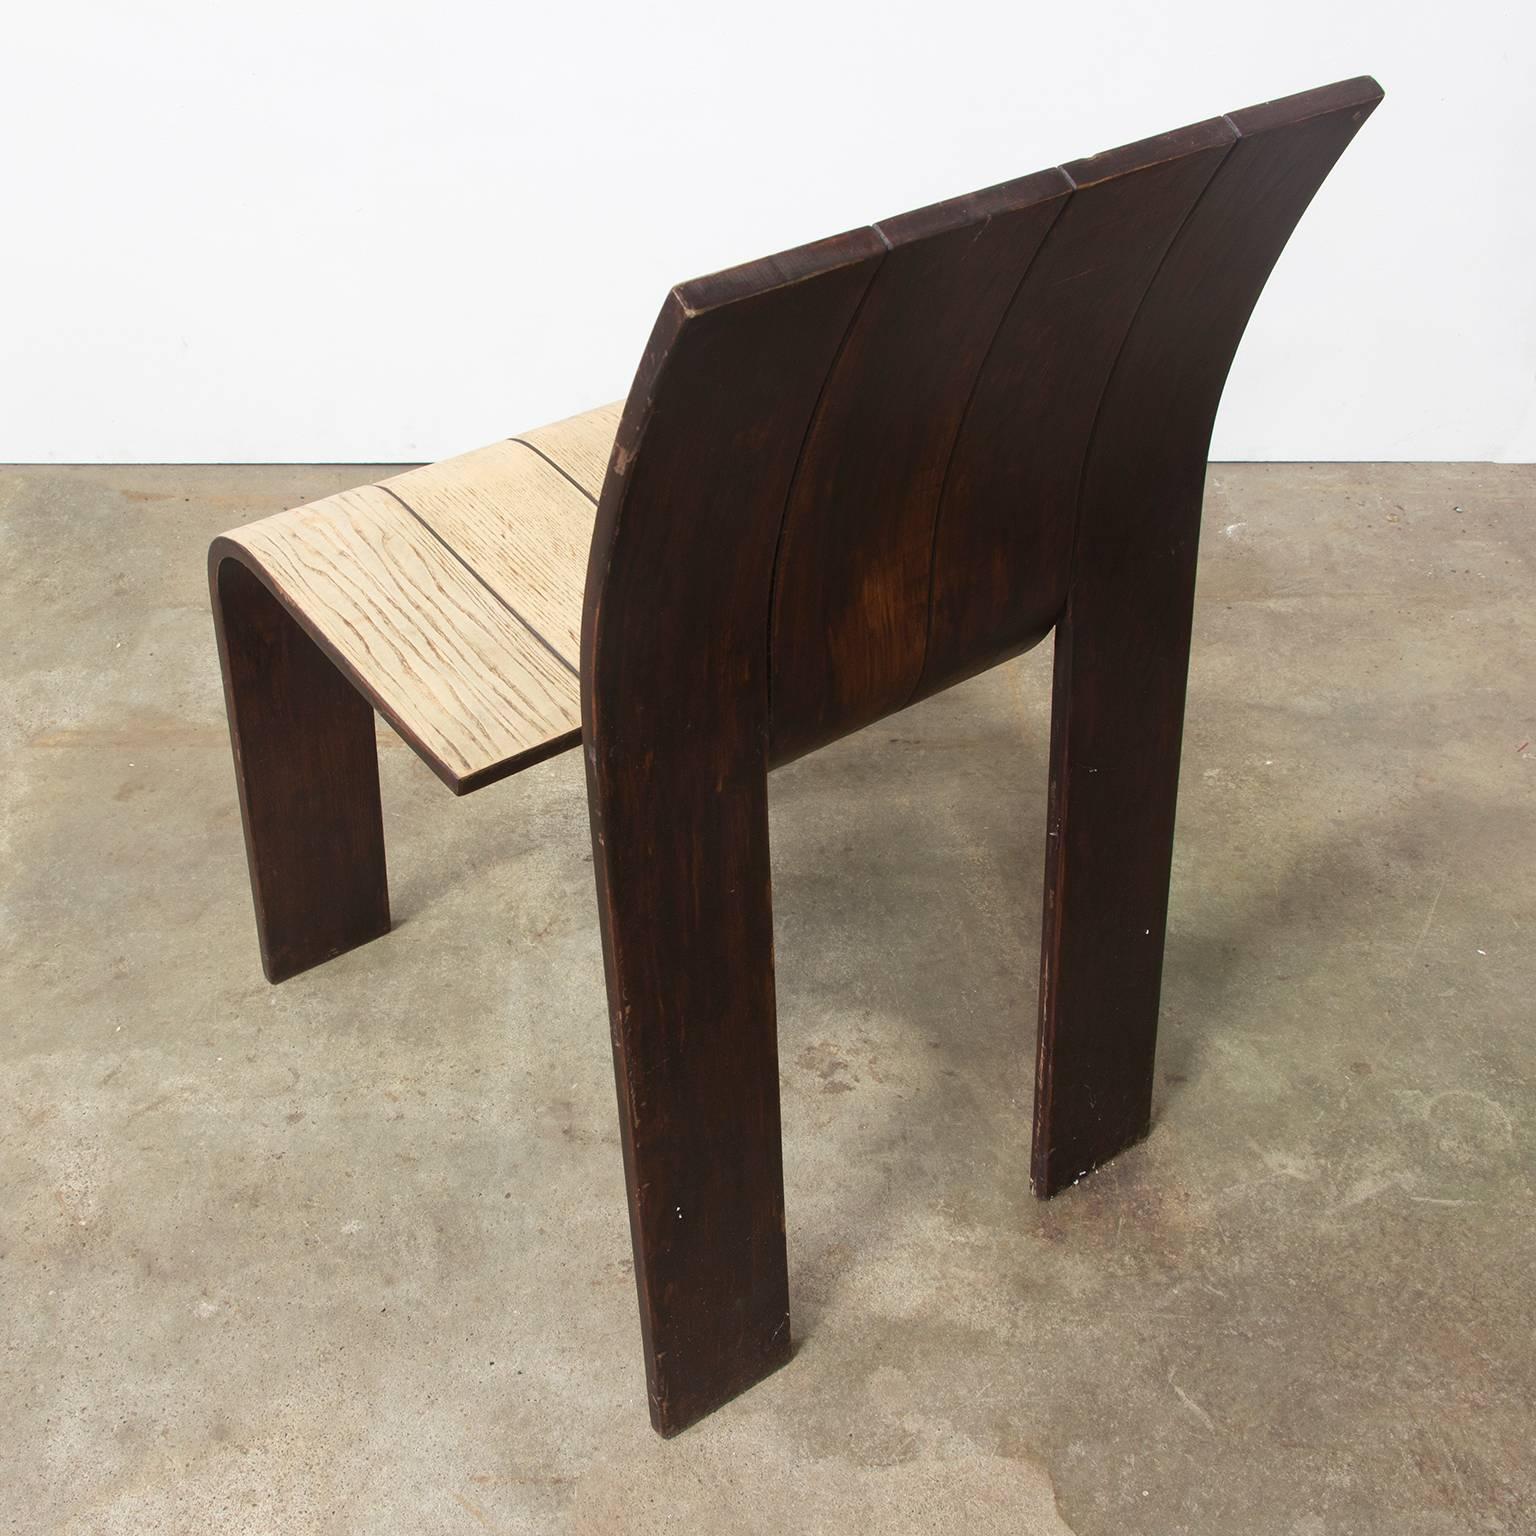 Fin du 20e siècle Chaise à rayures empilable en bois plié et en partie verni de Gijs Bakker, Castelijn, 1974